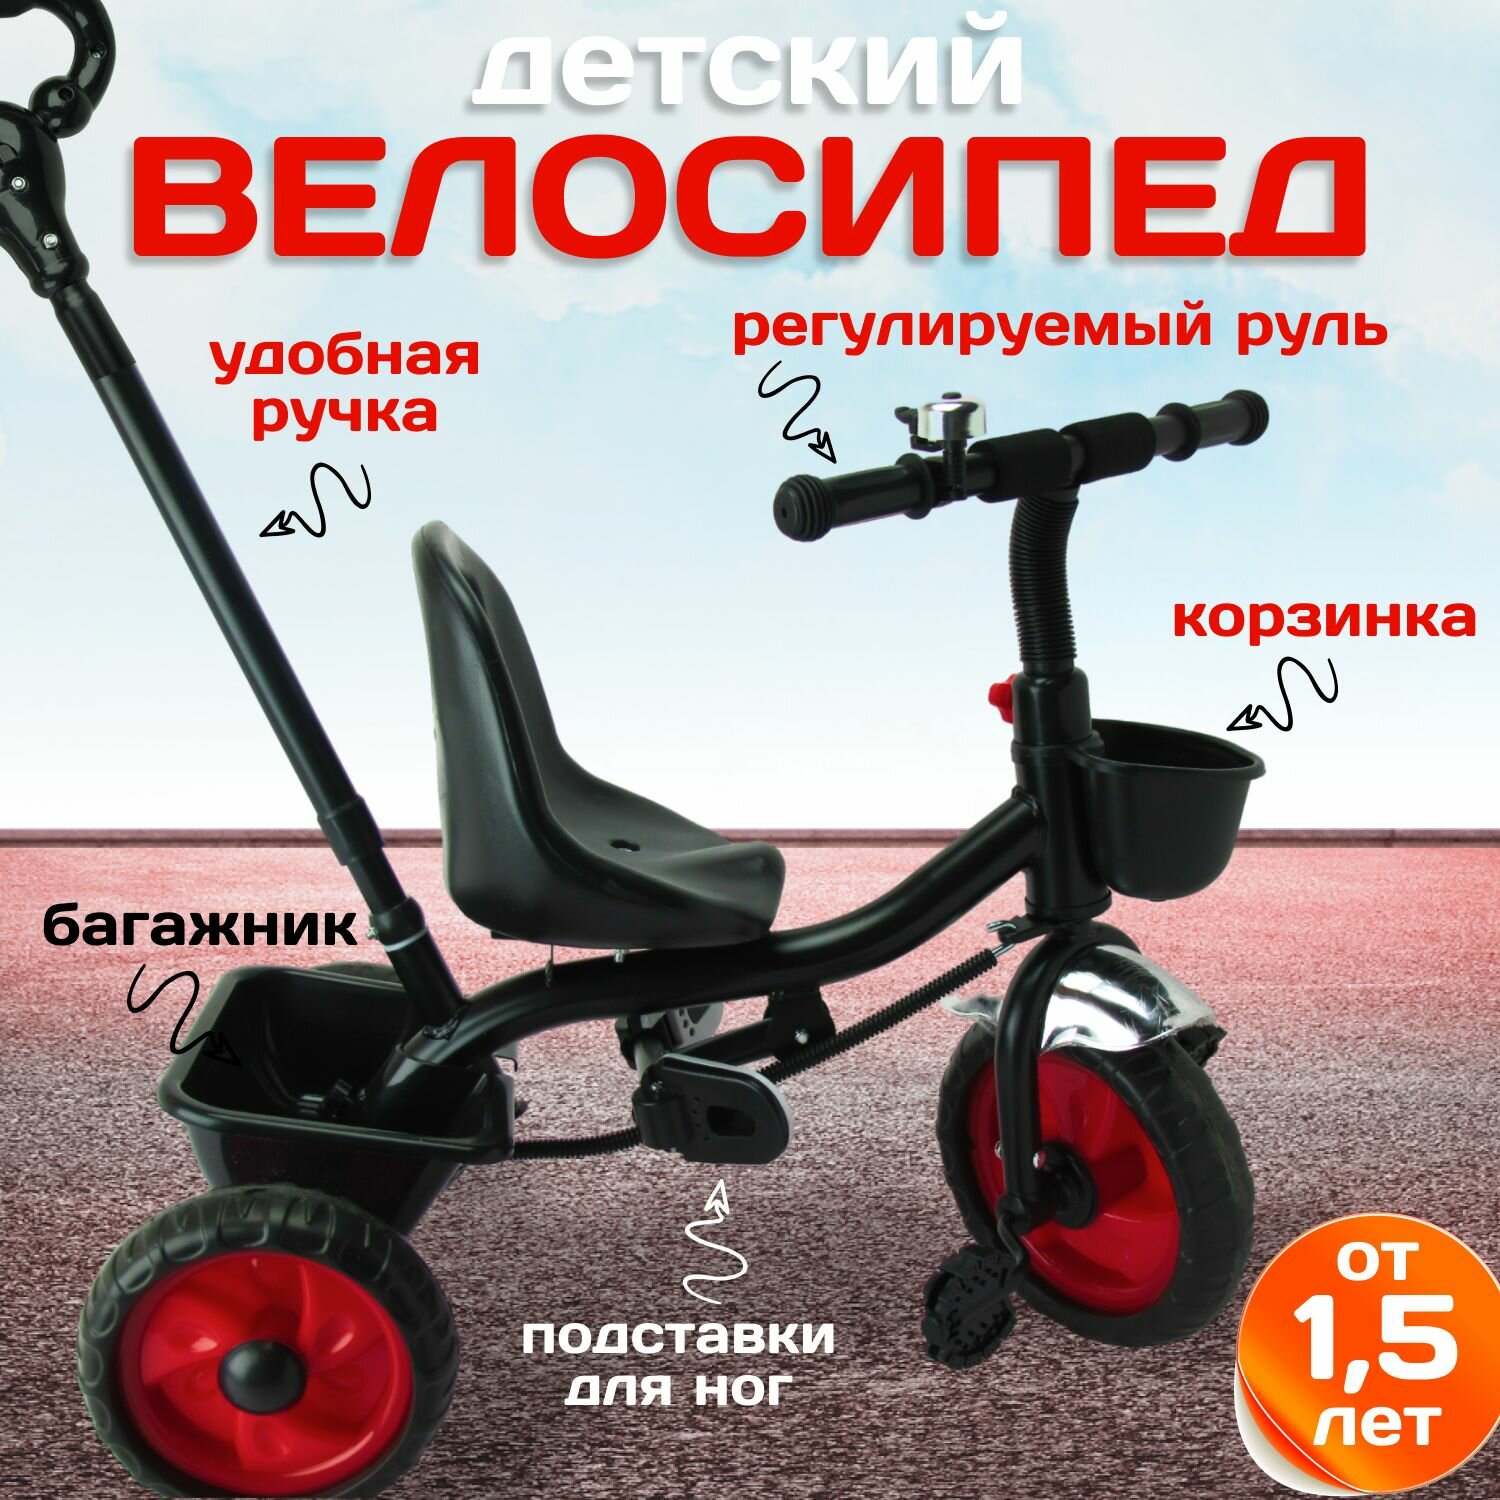 Детский велосипед трехколесный 10" и 8" EVA с корзинками, звонок, род. ручка. Черный